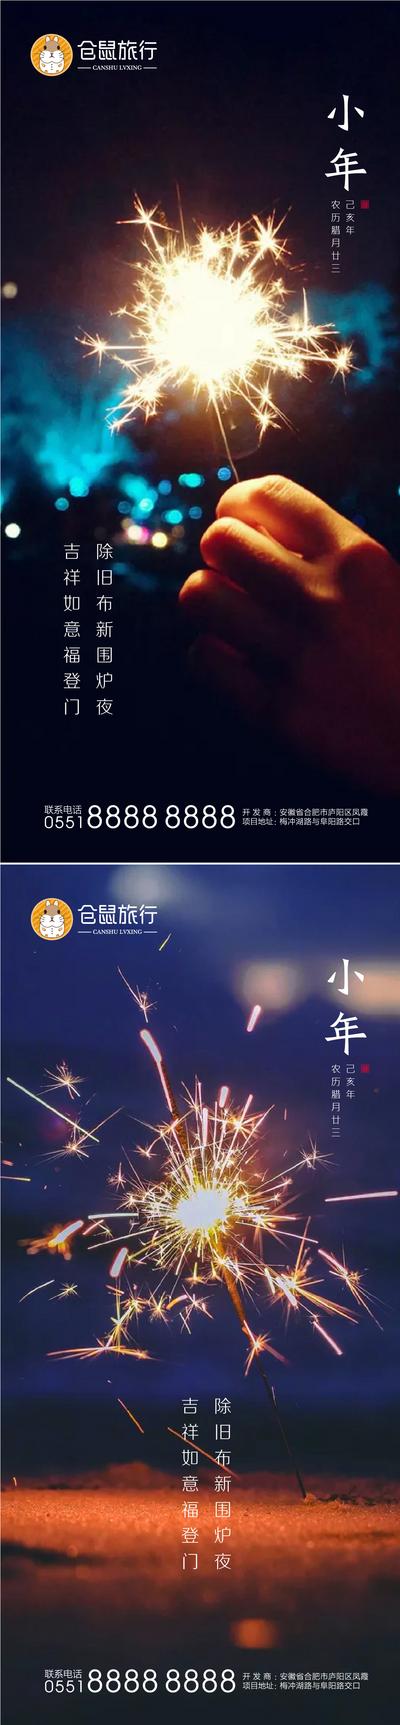 南门网 海报 中国传统节日 小年 除夕 春节 新年 烟花  